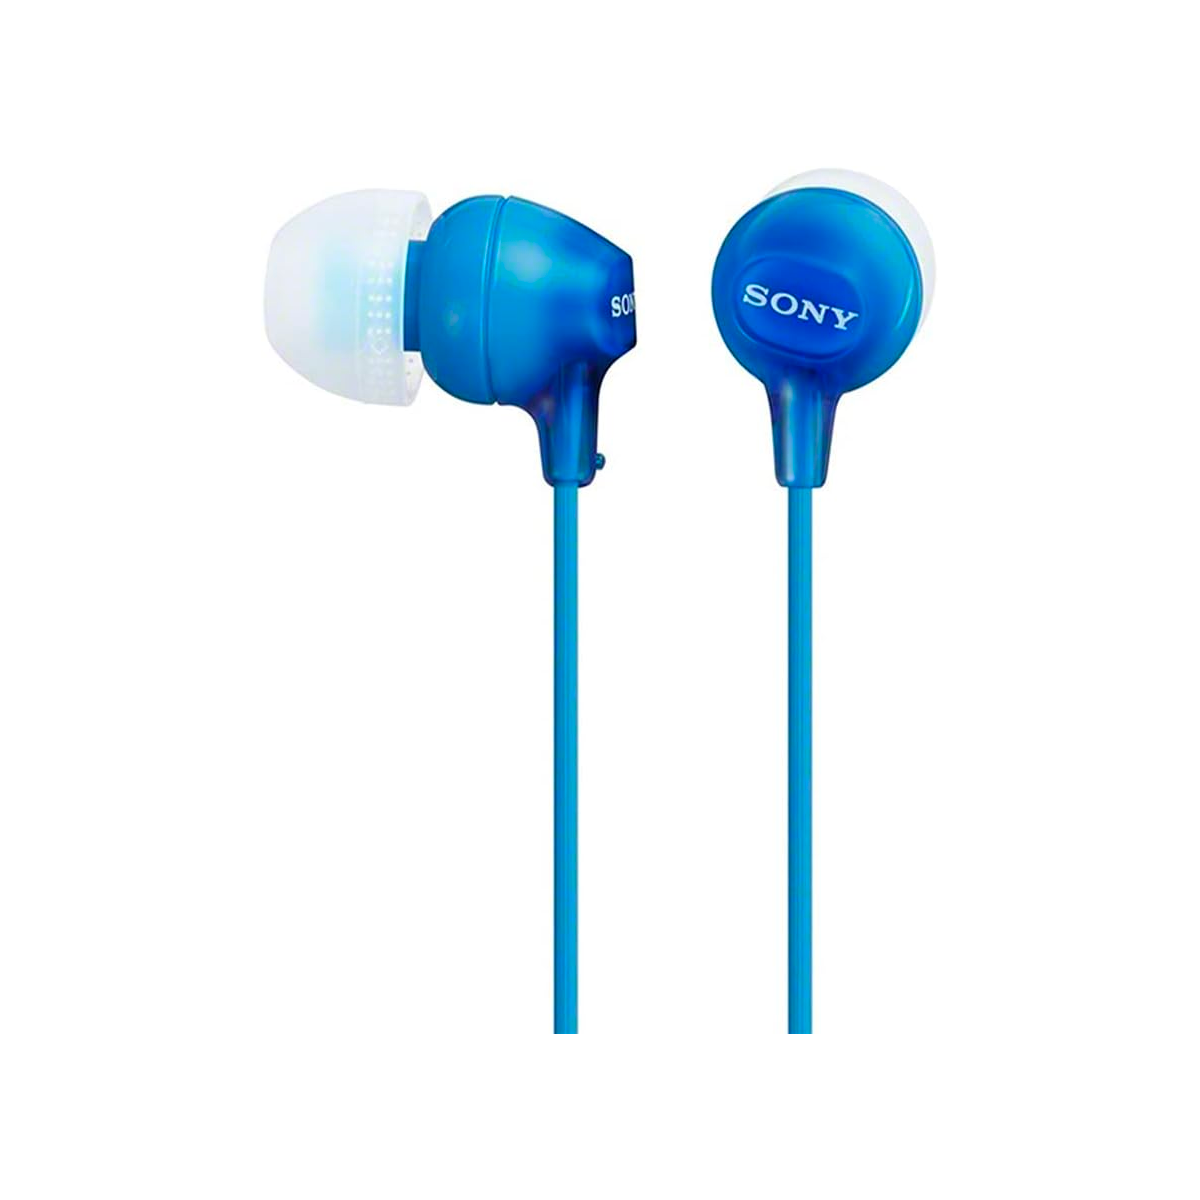 Audifonos Estandar Sony Interno Azul Internosagudos Y Mediosazul